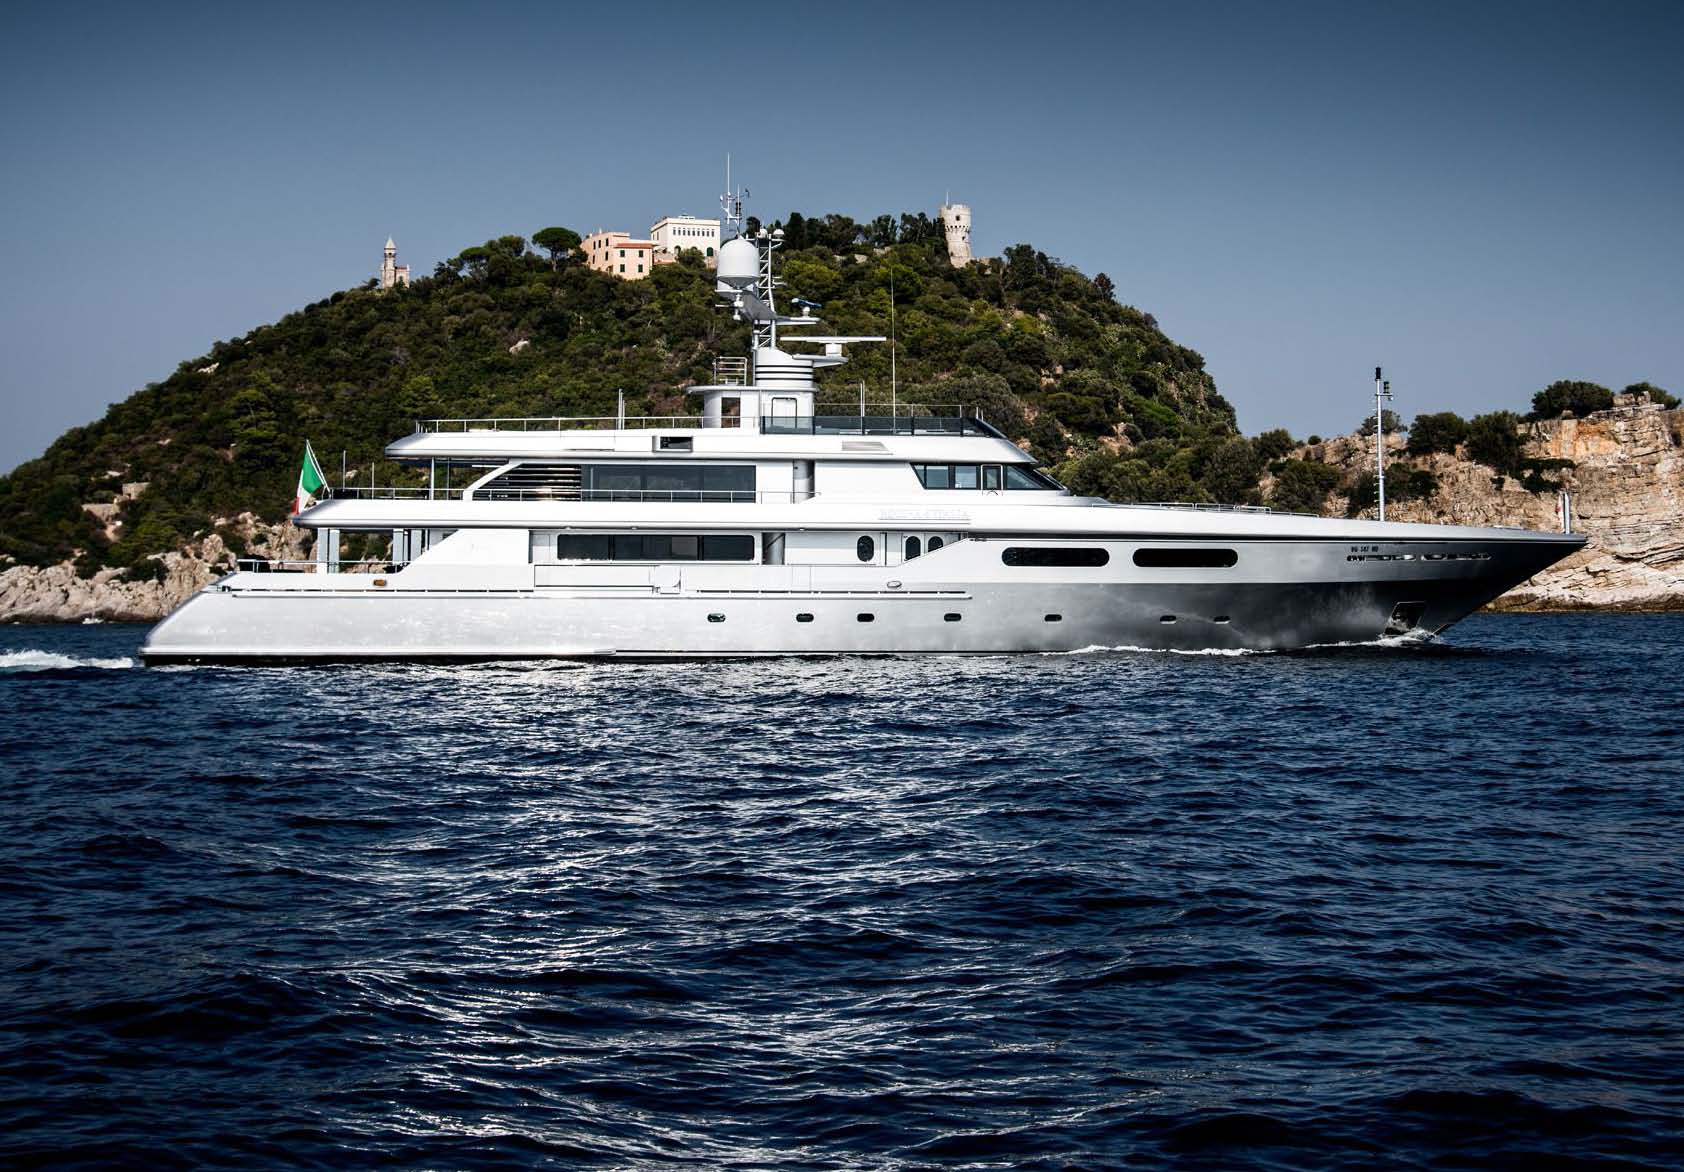 regina d'italia yacht rental price